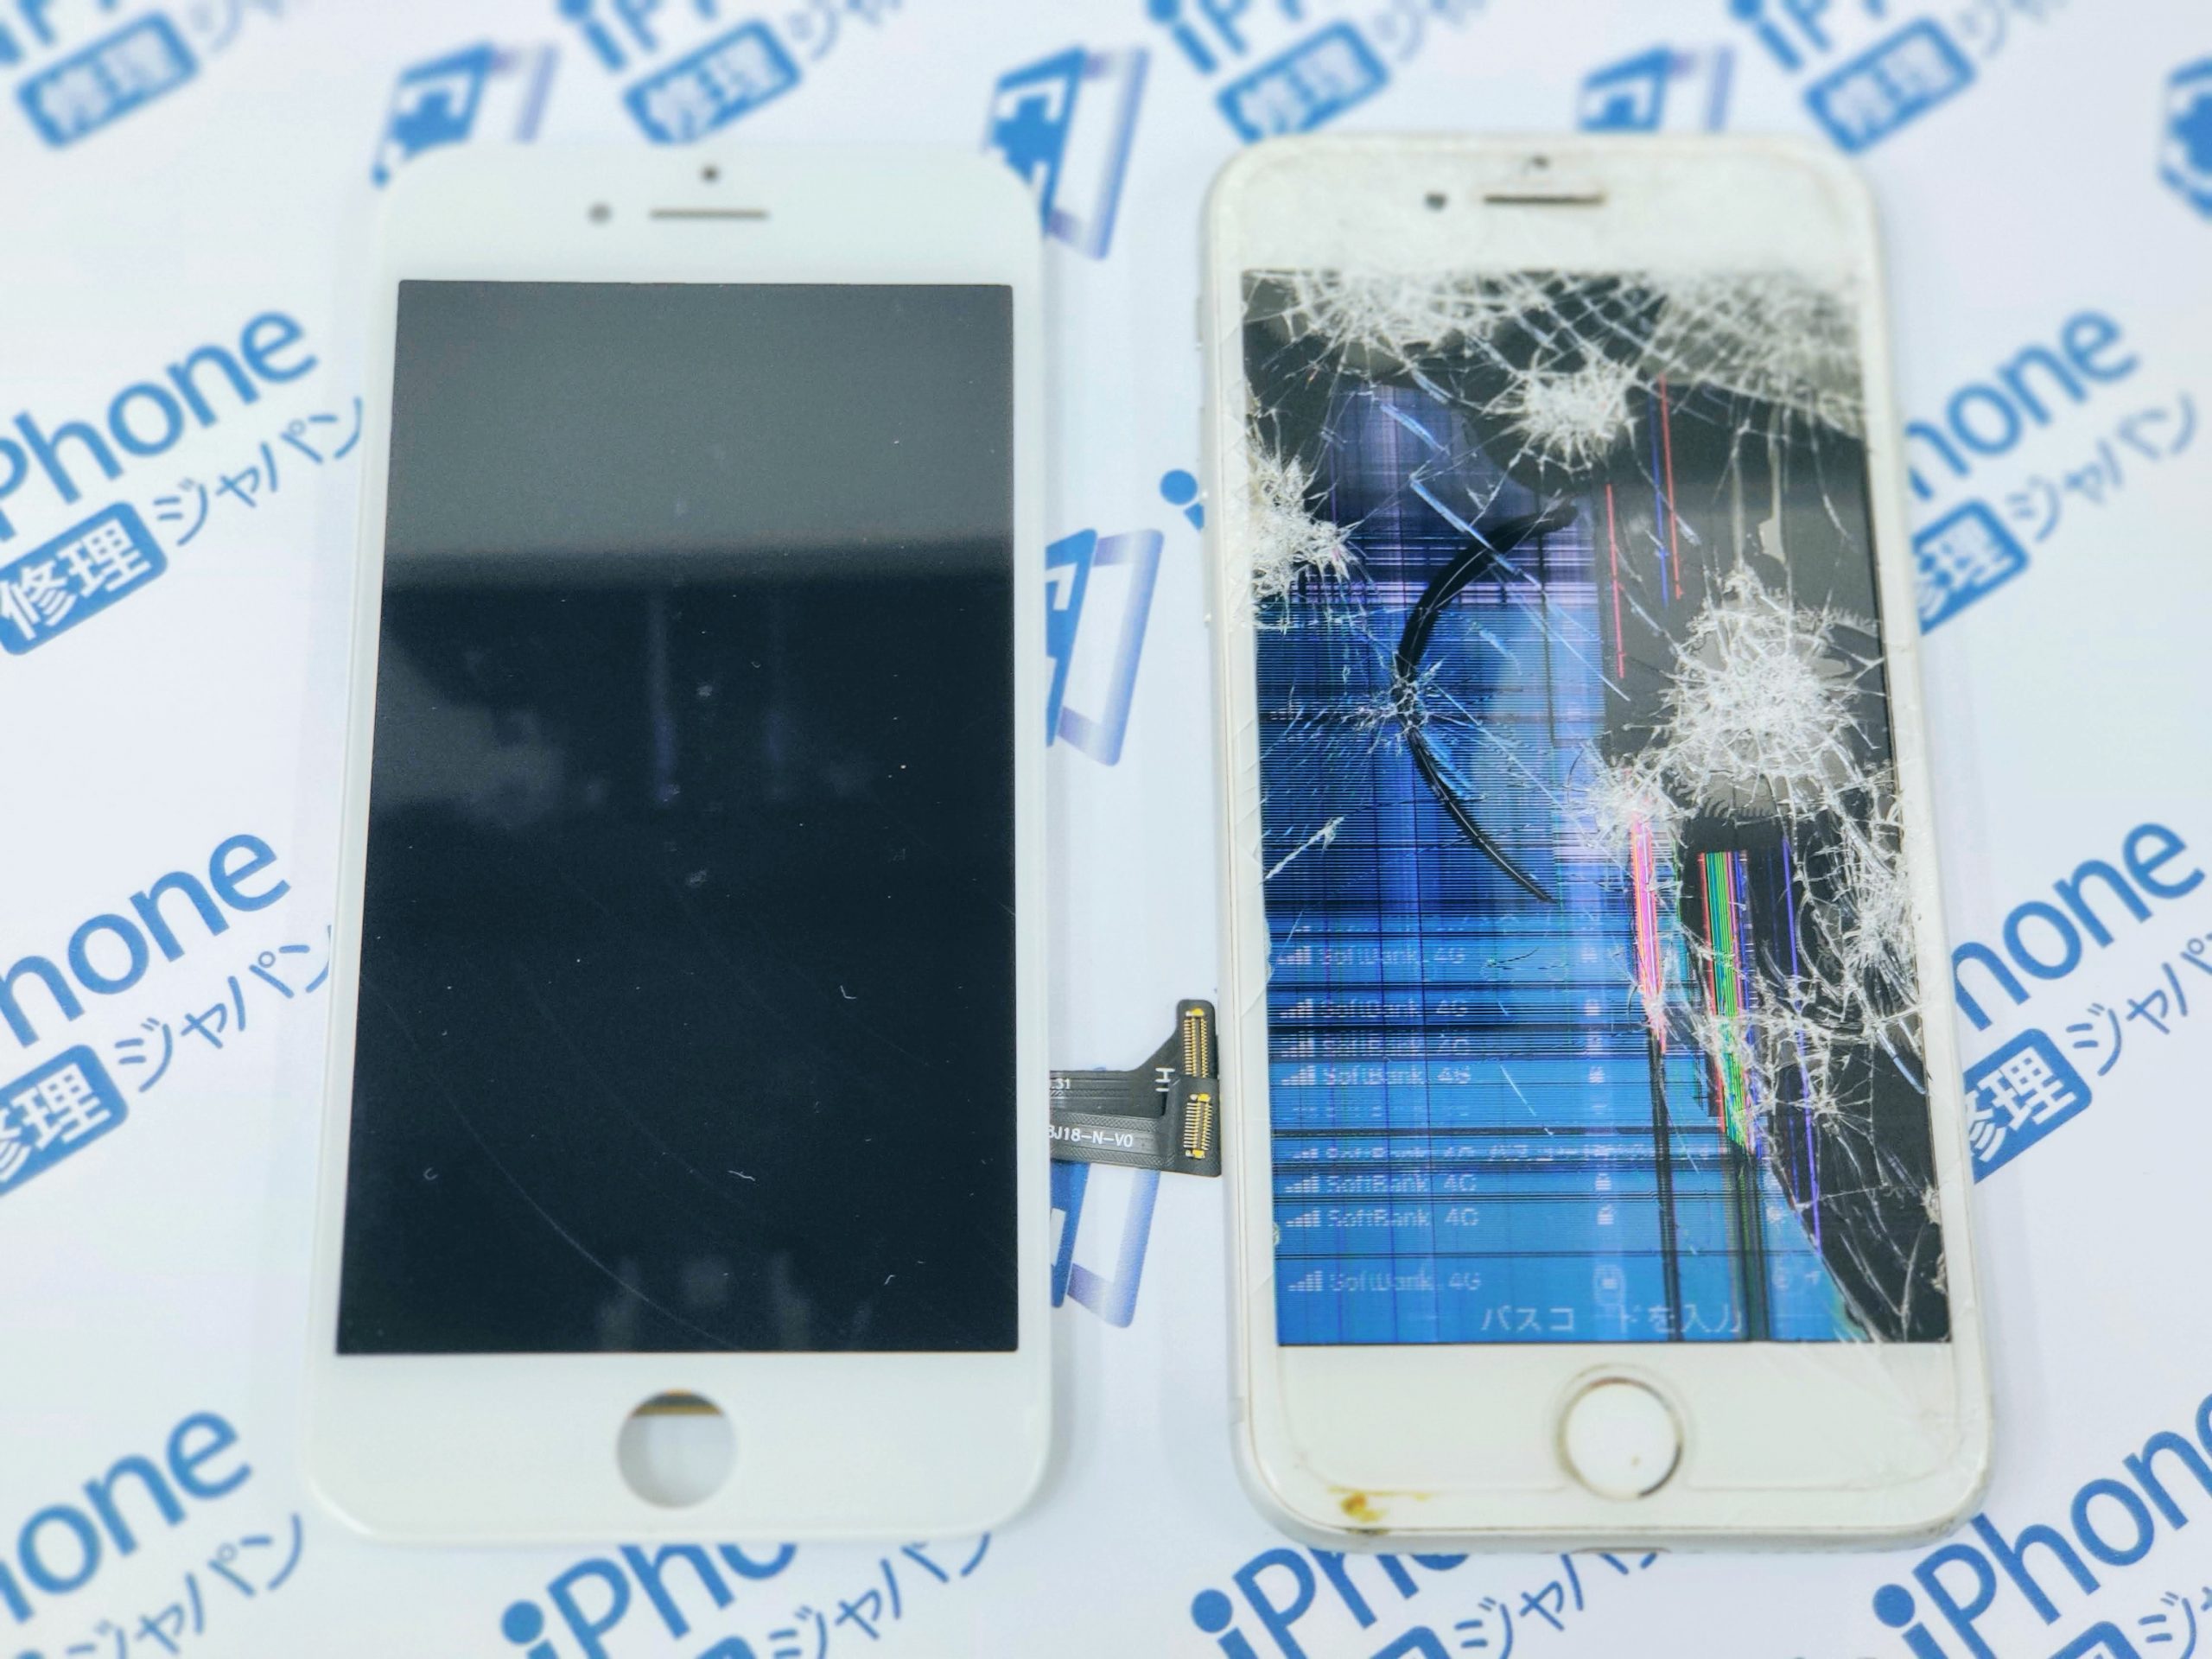 Iphoneの画面が割れたまま使うのはng プロの意見は Iphone修理ジャパン新宿店スタッフブログ